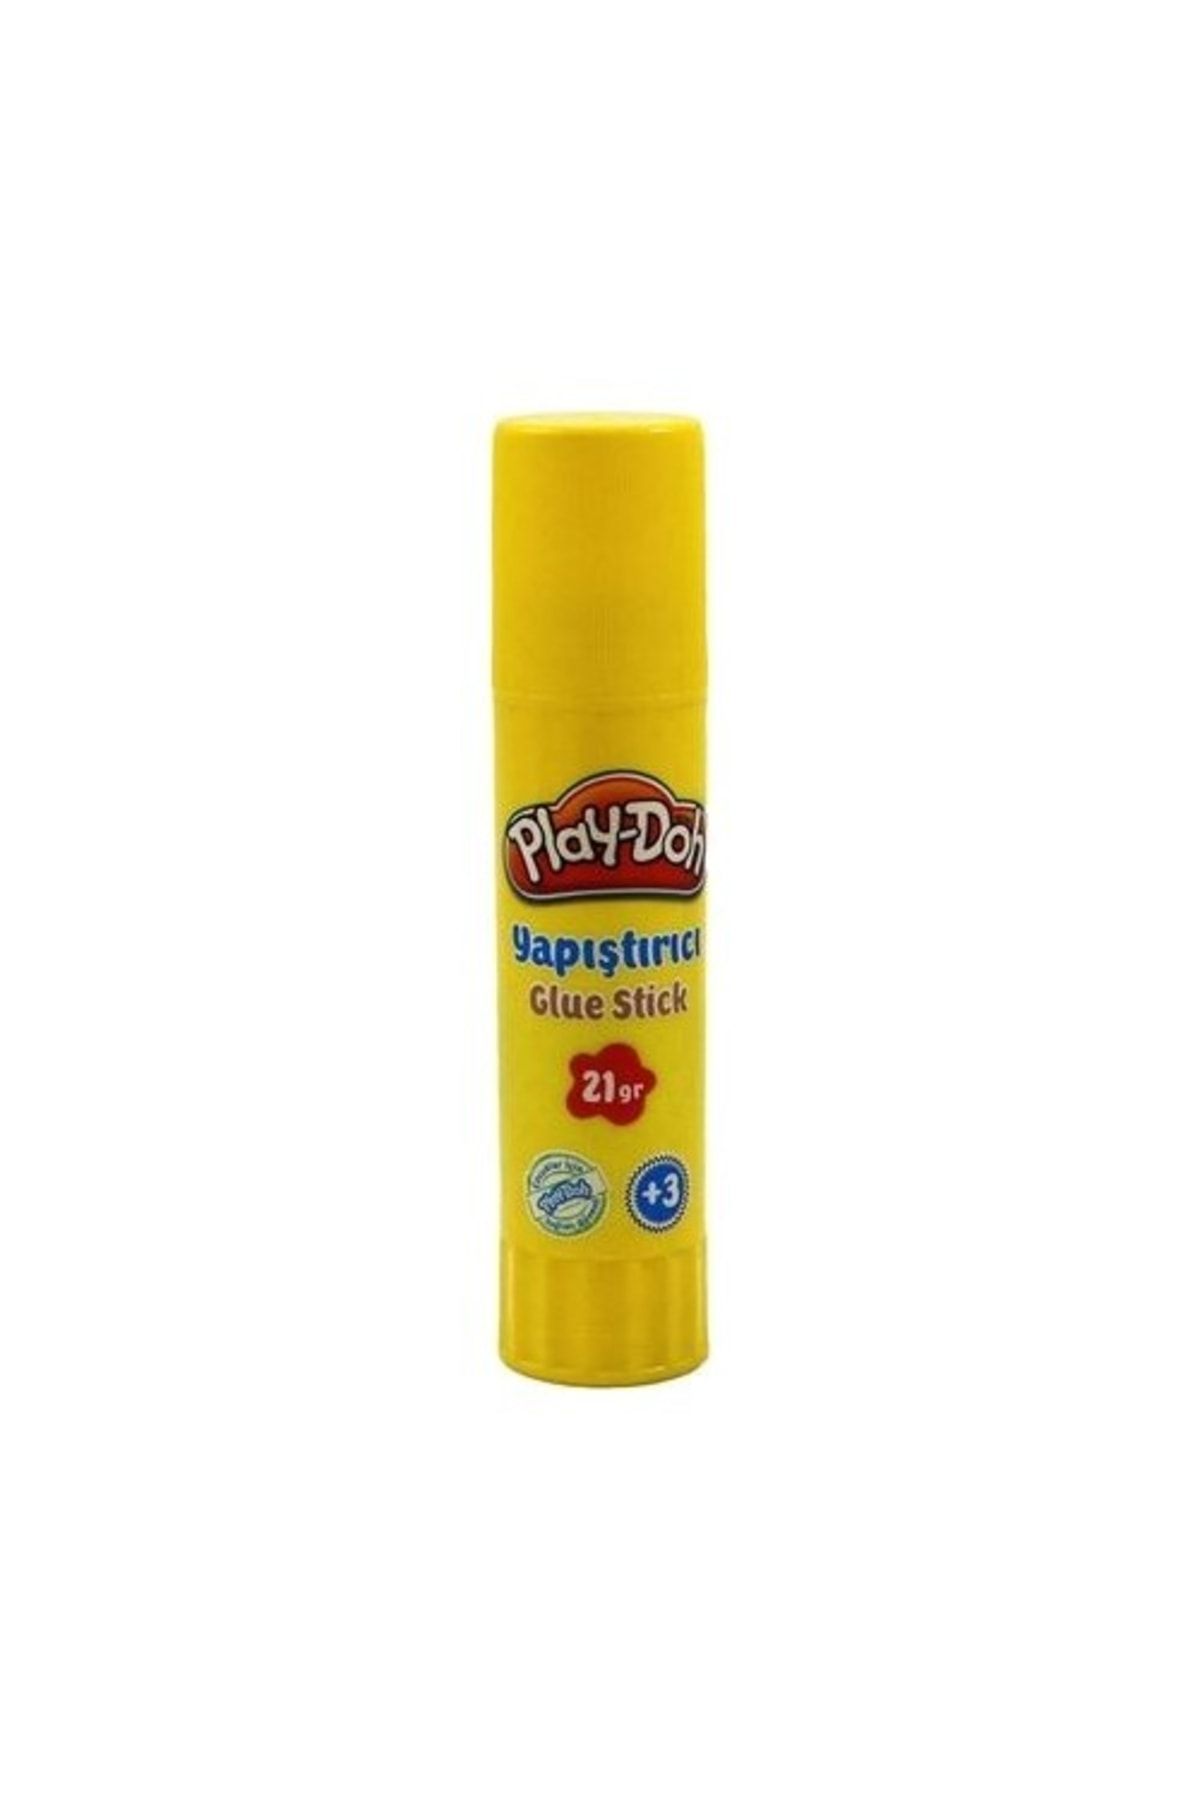 Play Doh Glue Stick Yapıştırıcı 21gr